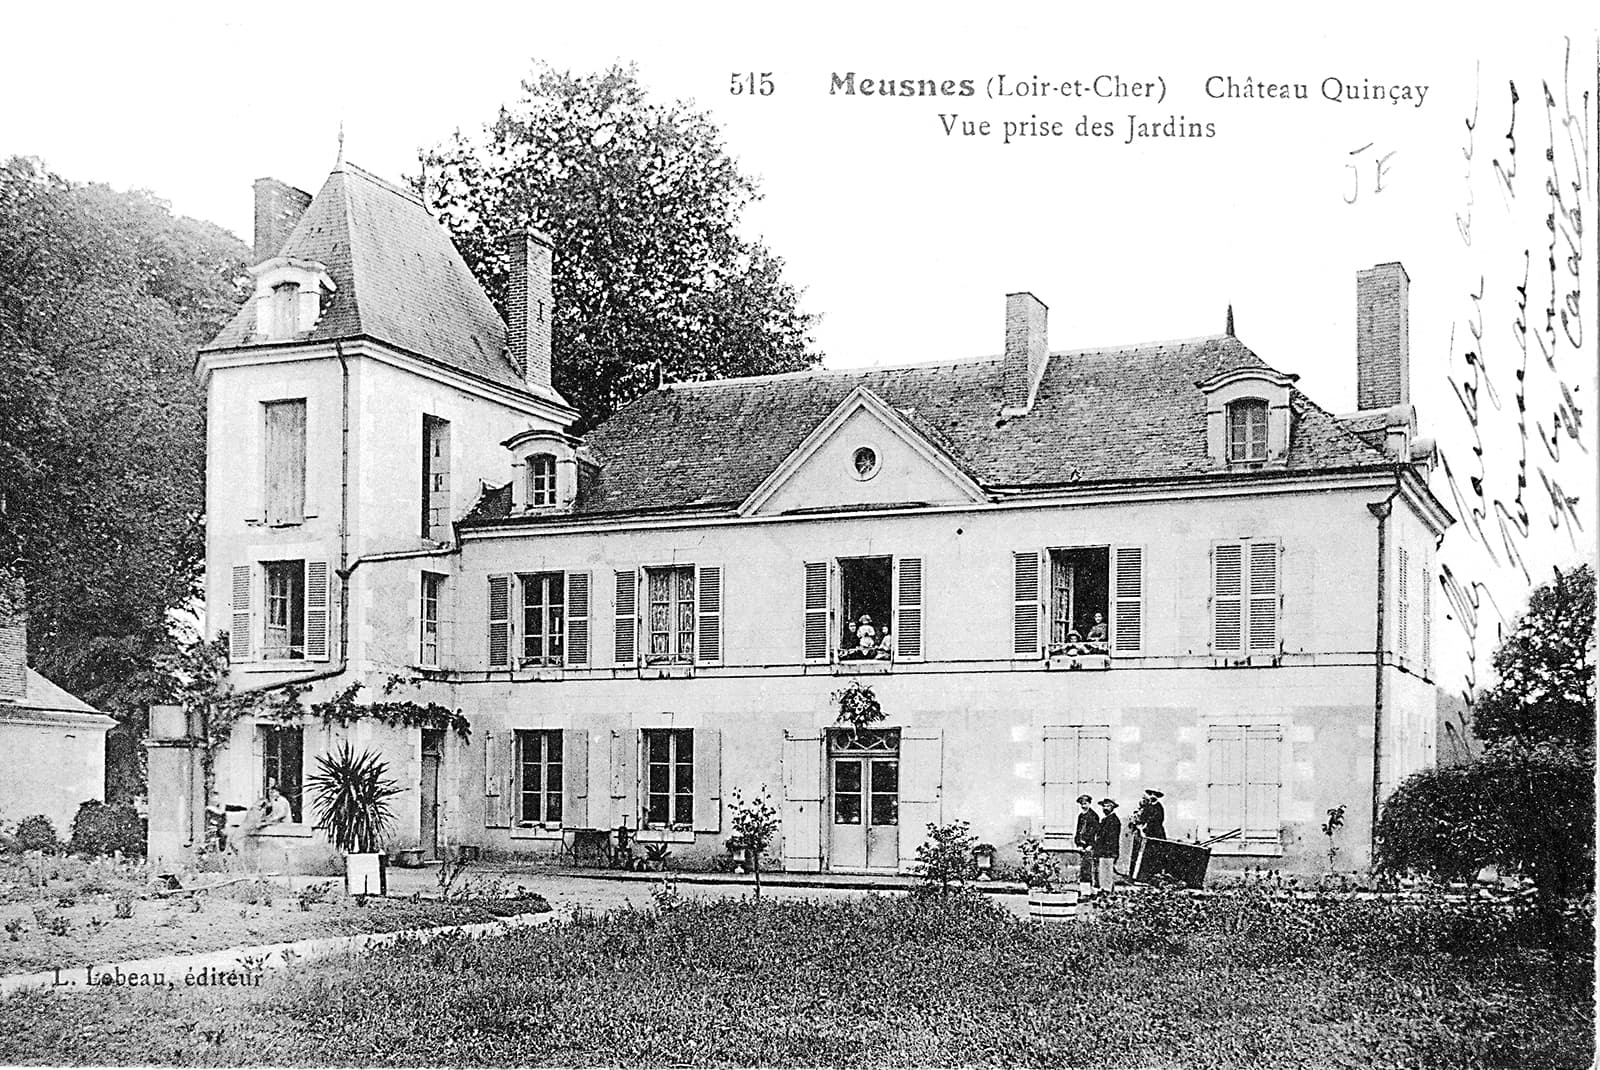 Château de Quinçay - Domaine viticole familial du Val de Loire